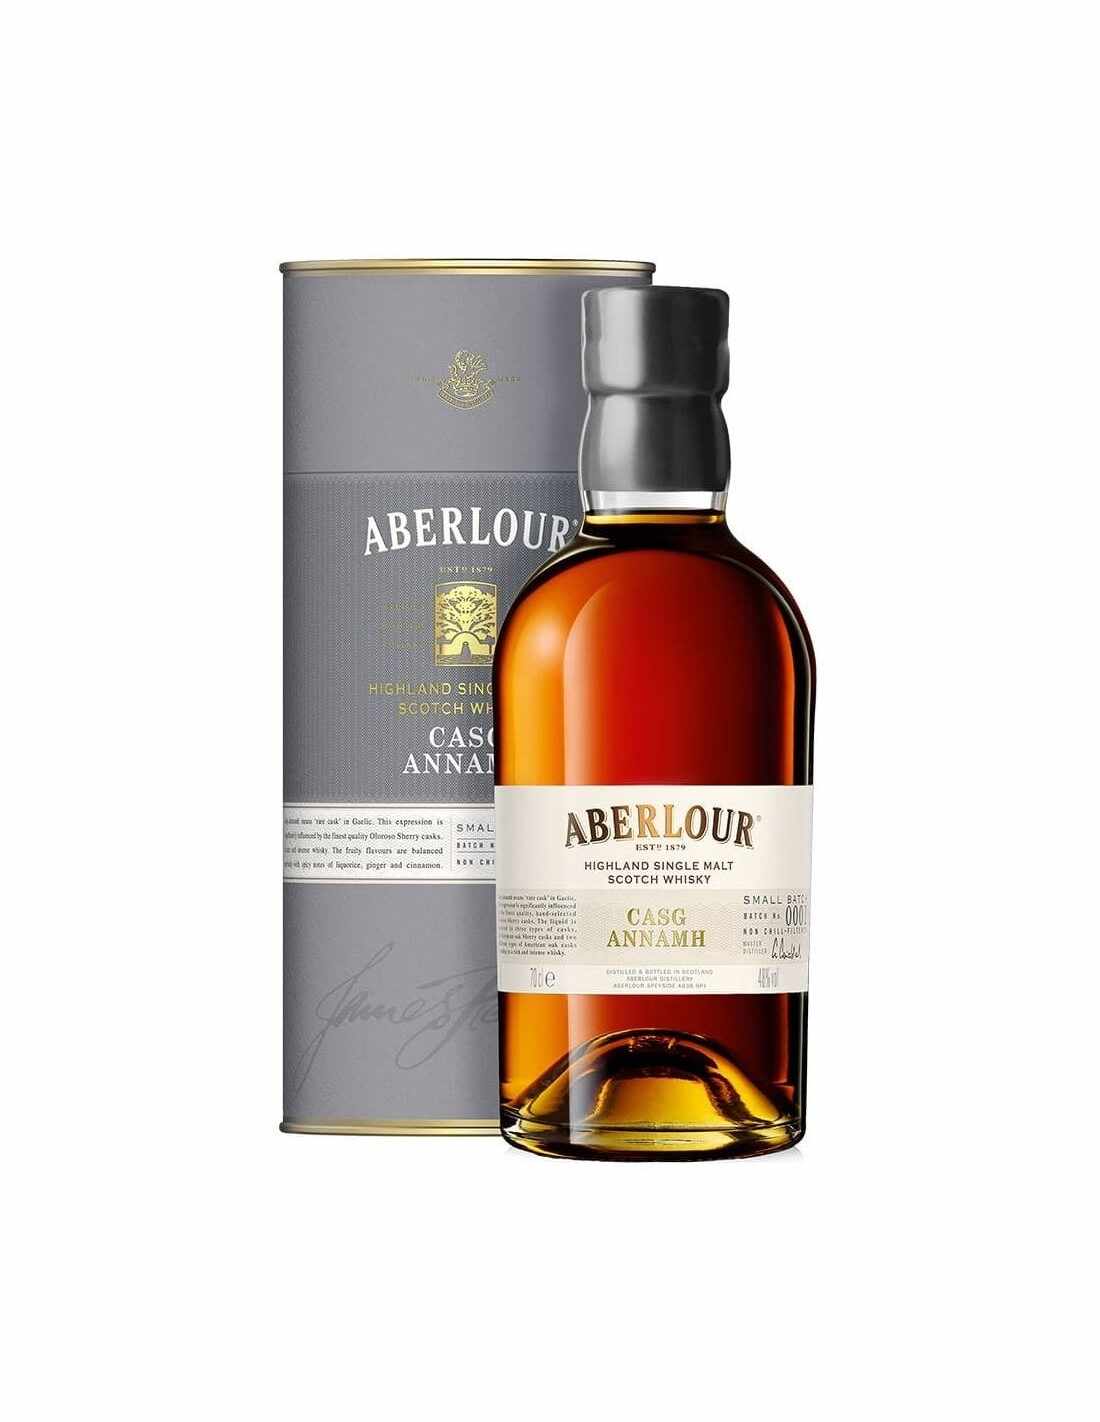 Whisky Aberlour Casg Annamh 0.7L, 48% alc., Scotia